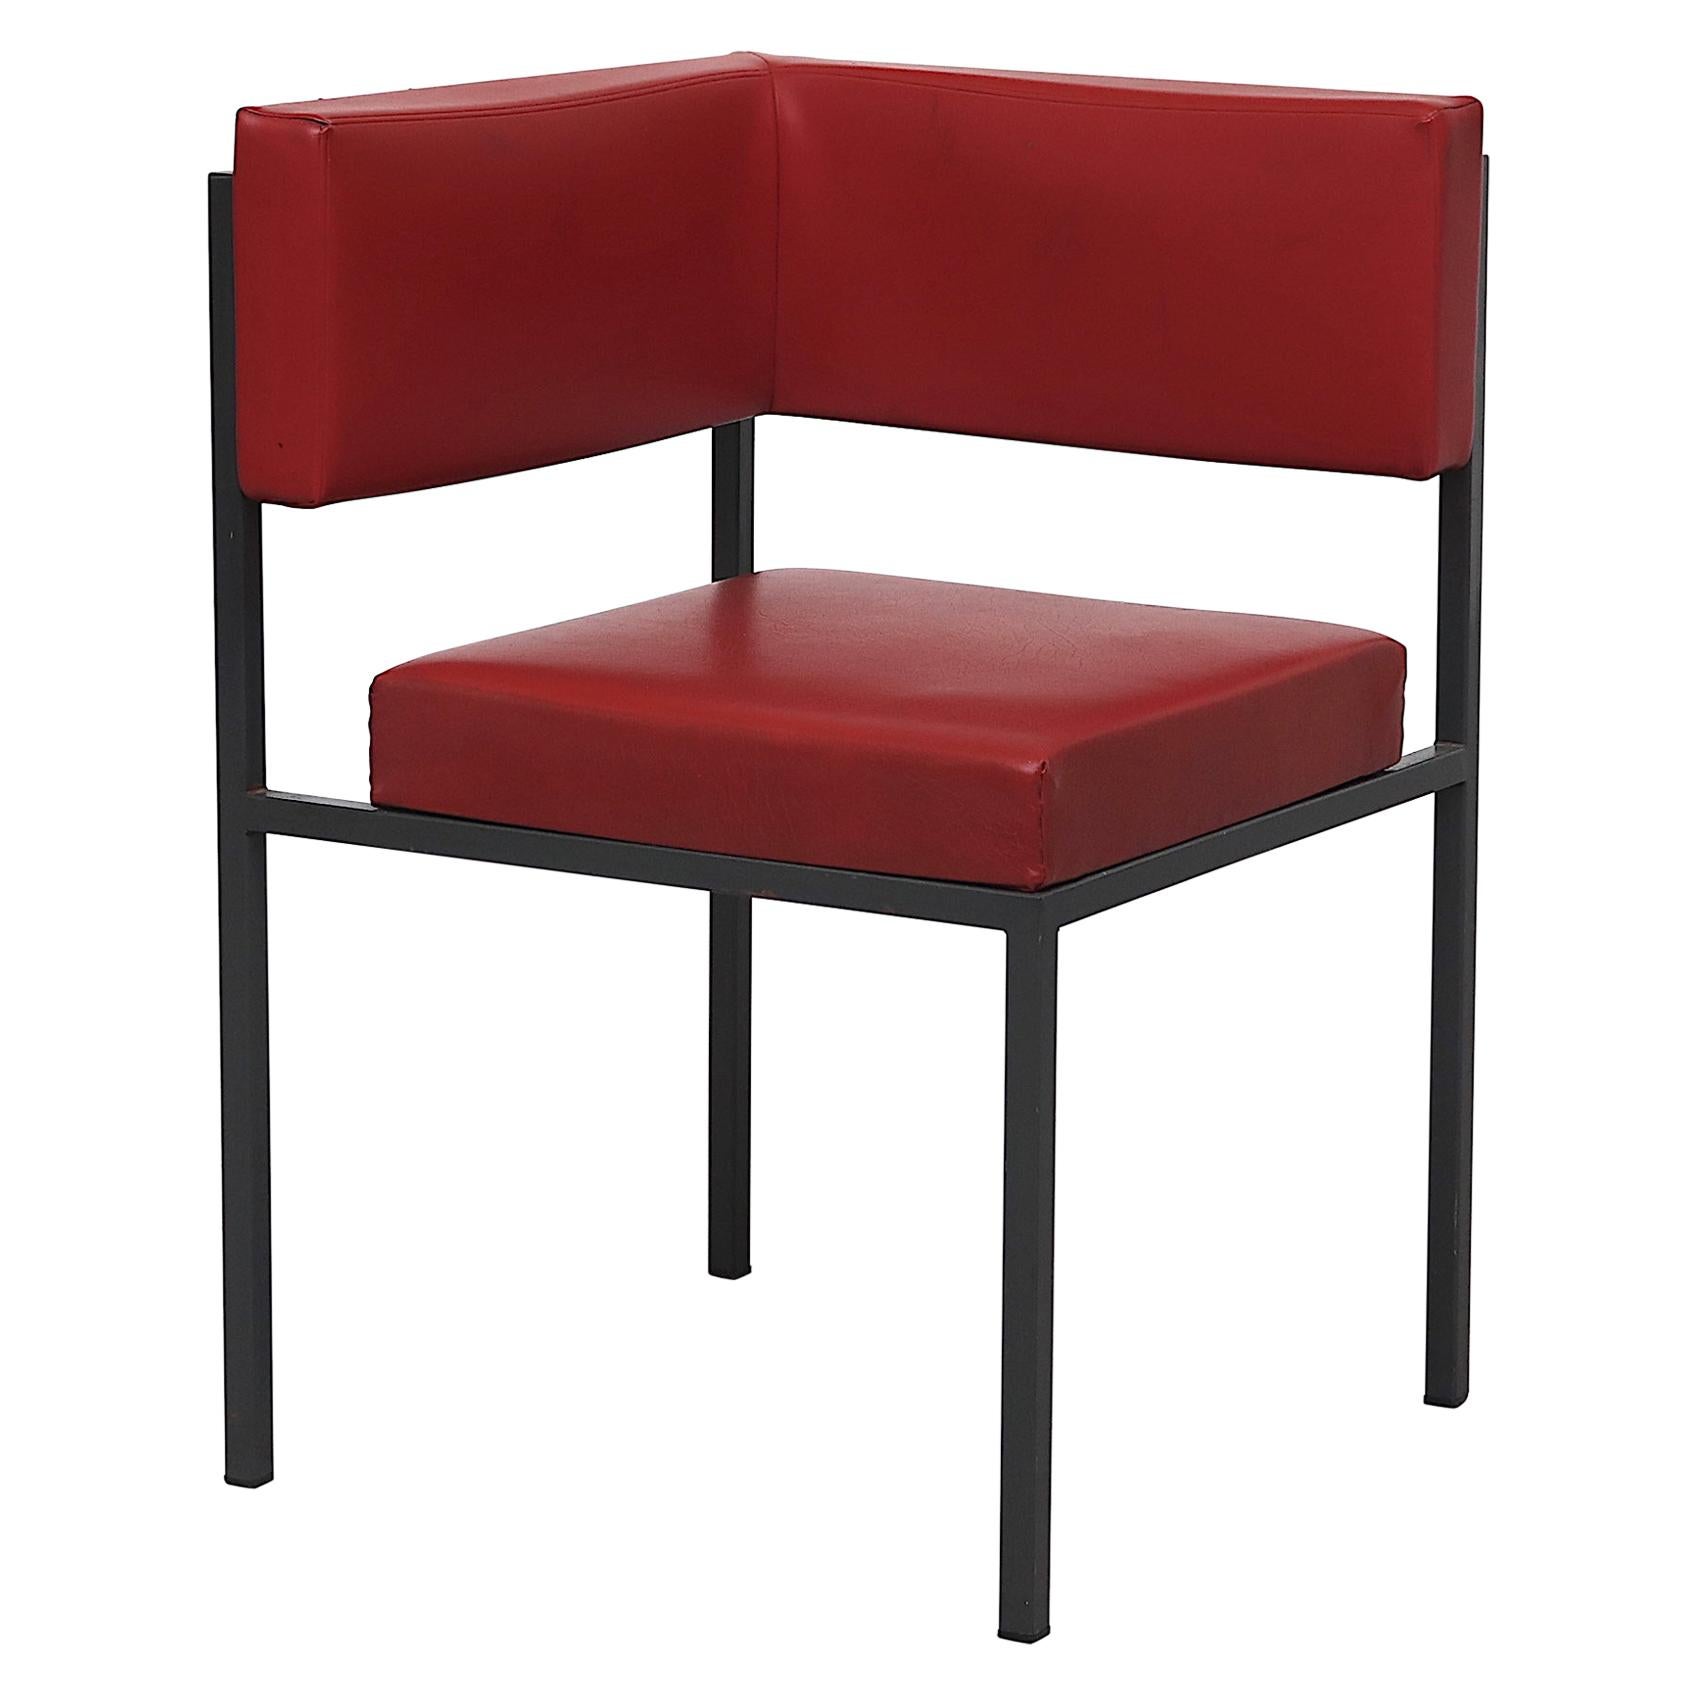 Midcentury Hein Stolle Attributed Red Skai Corner Chair